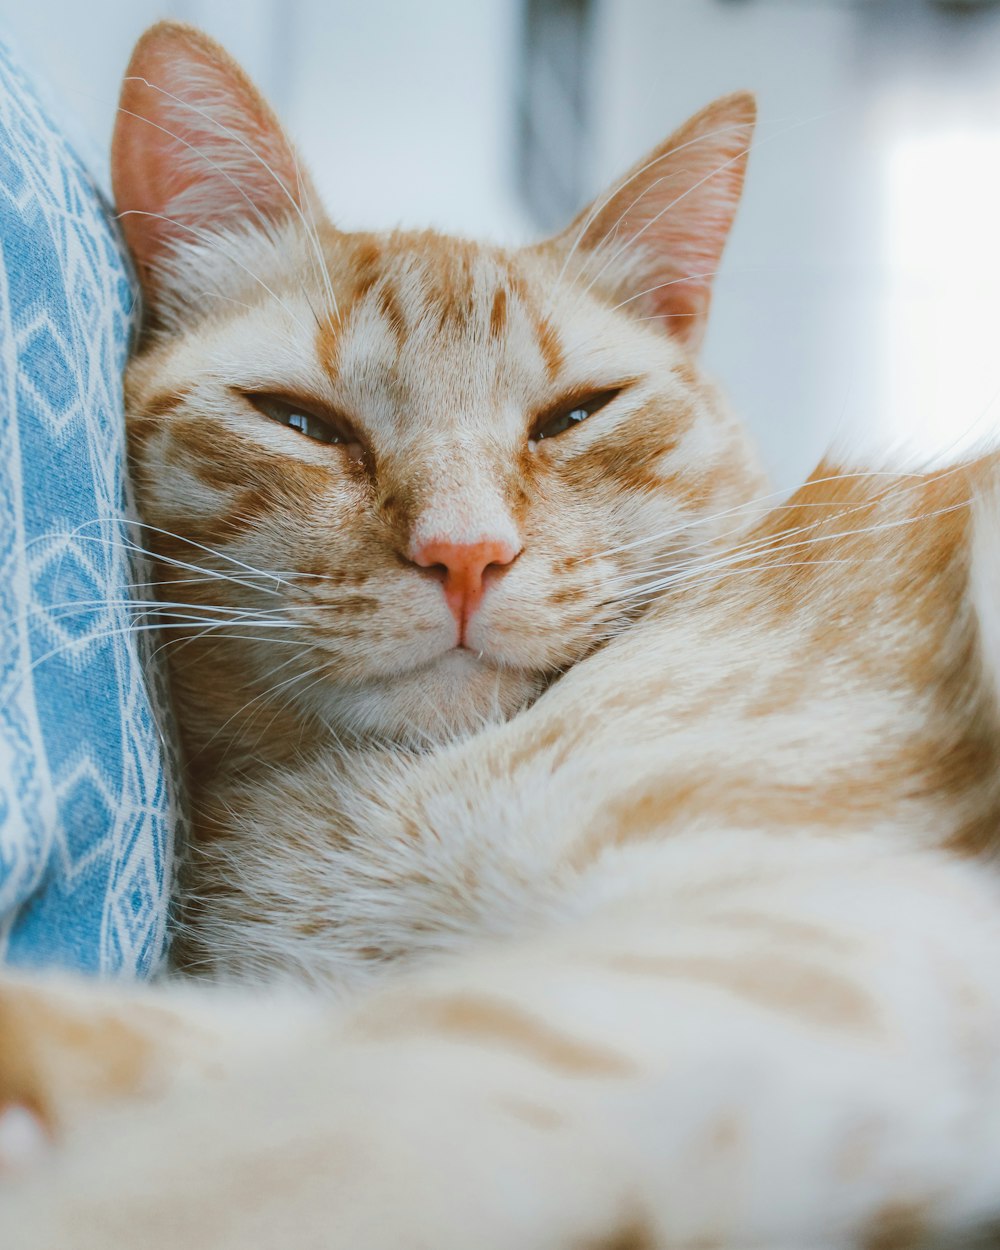 gato tabby laranja deitado no tecido azul e branco